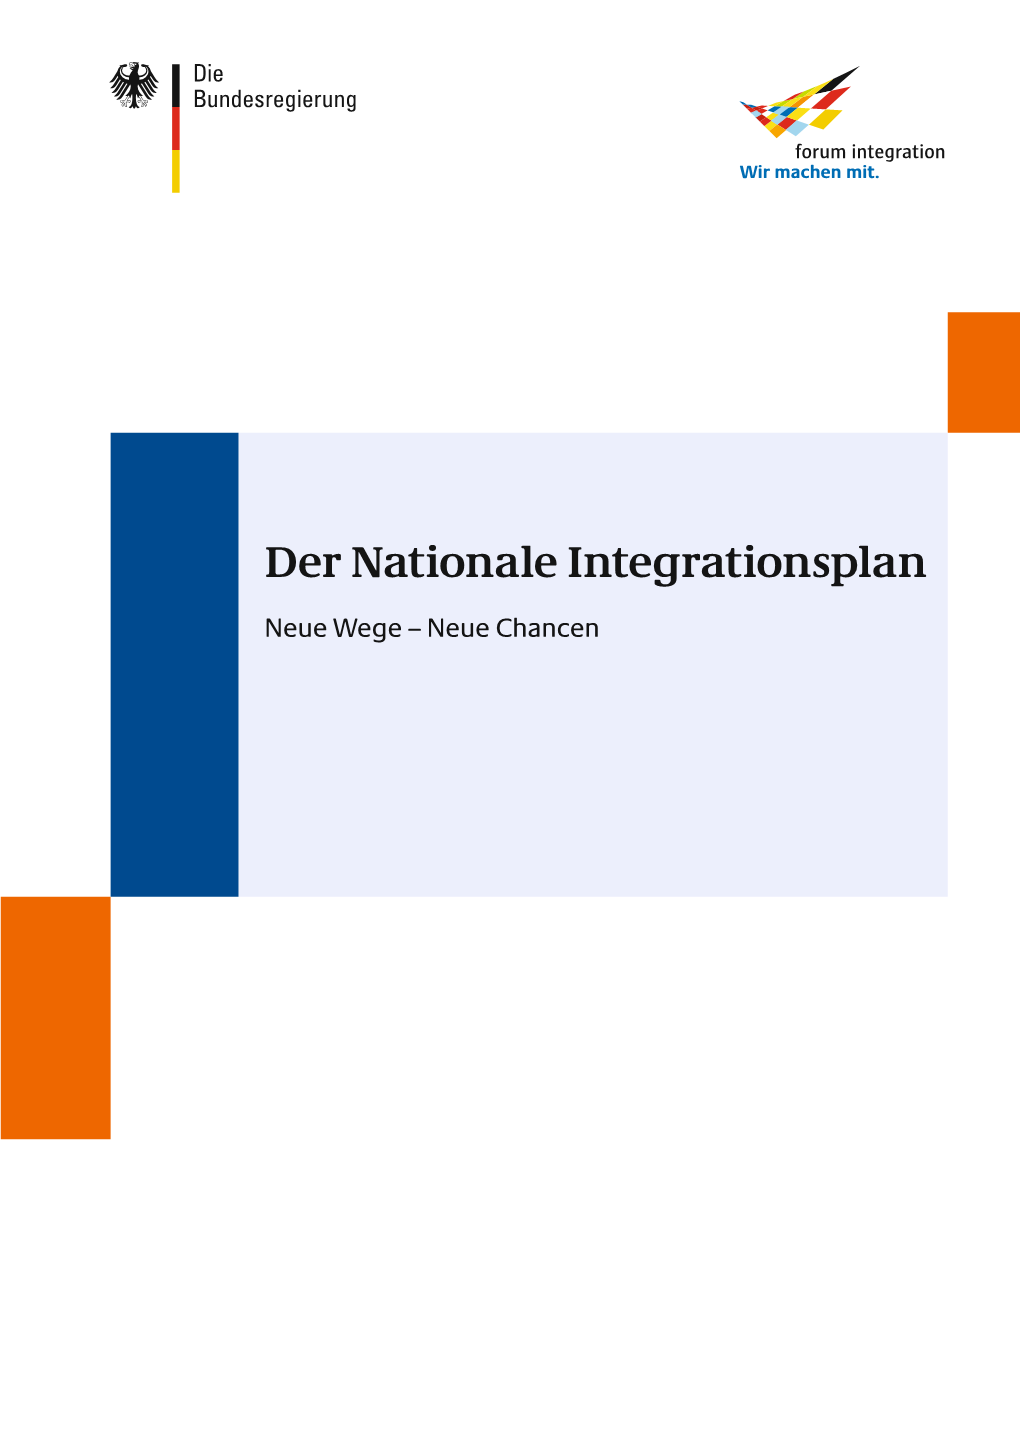 Der Nationale Integrationsplan Neue Wege – Neue Chancen